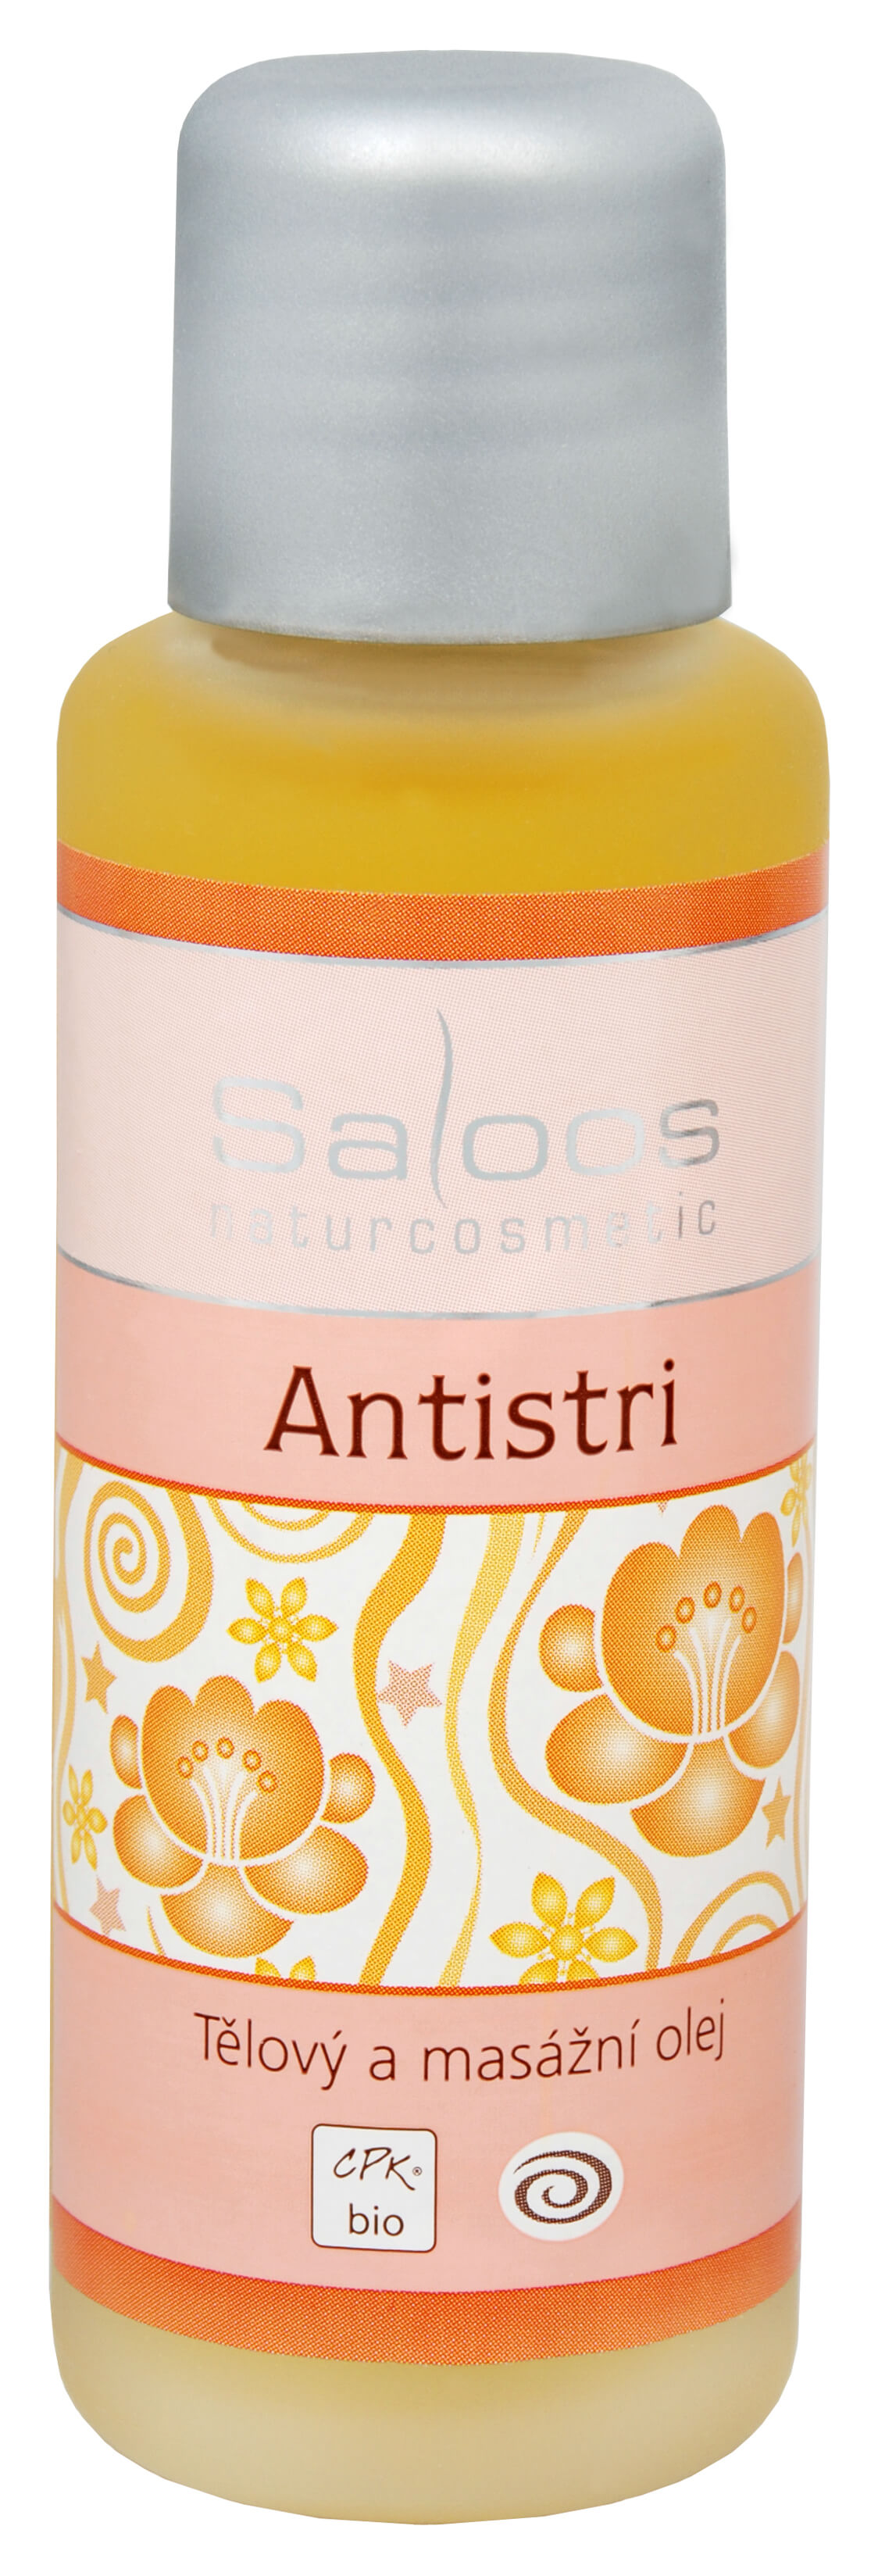 Saloos Bio tělový a masážní olej - Antistri 125 ml